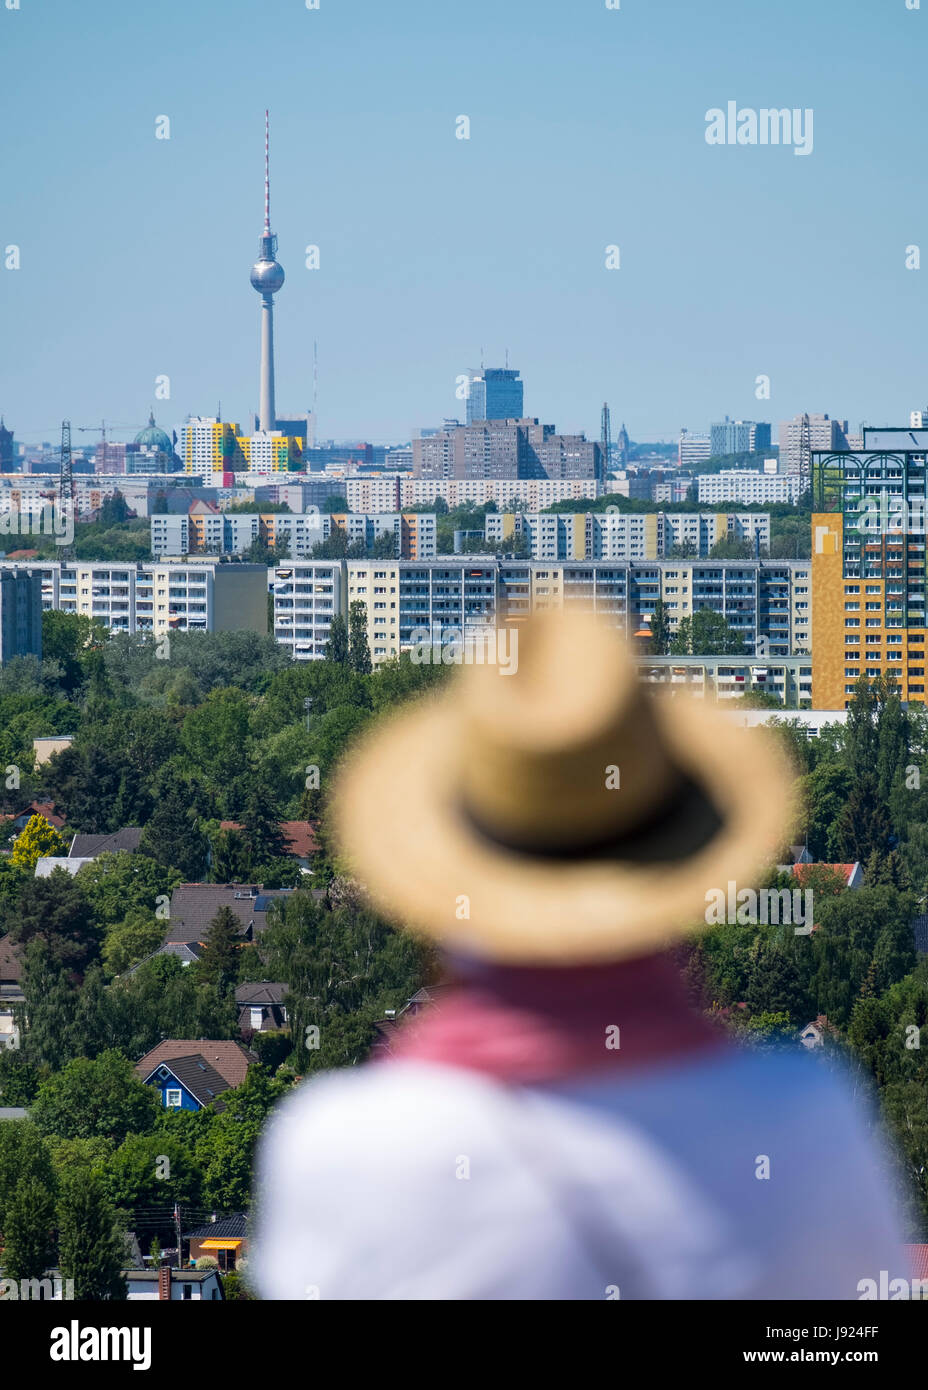 Besucher auf die Aussichtsplattform mit Blick auf die Berliner Skyline bei IGA 2017 internationales Gartenfestival (internationale Garten Ausstellung) in Berlin, Deutschland Stockfoto